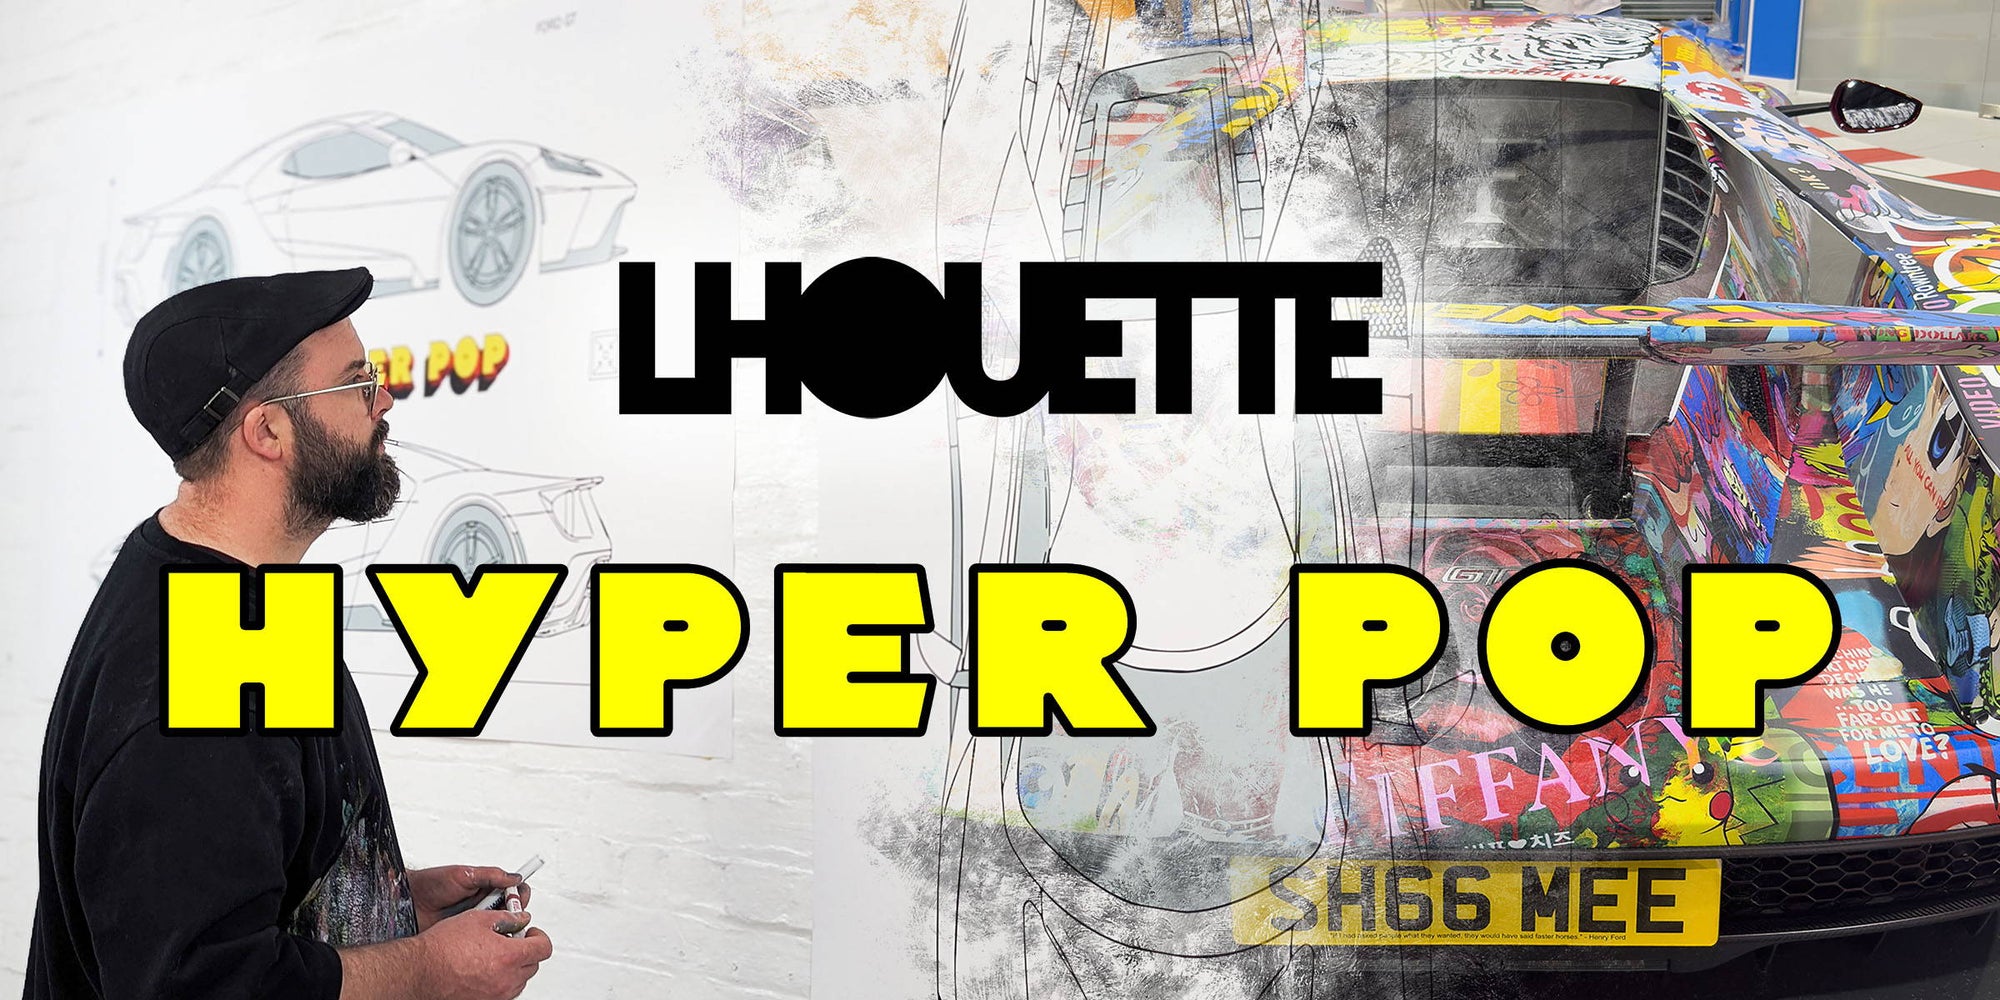 HYPER POP by Lhouette